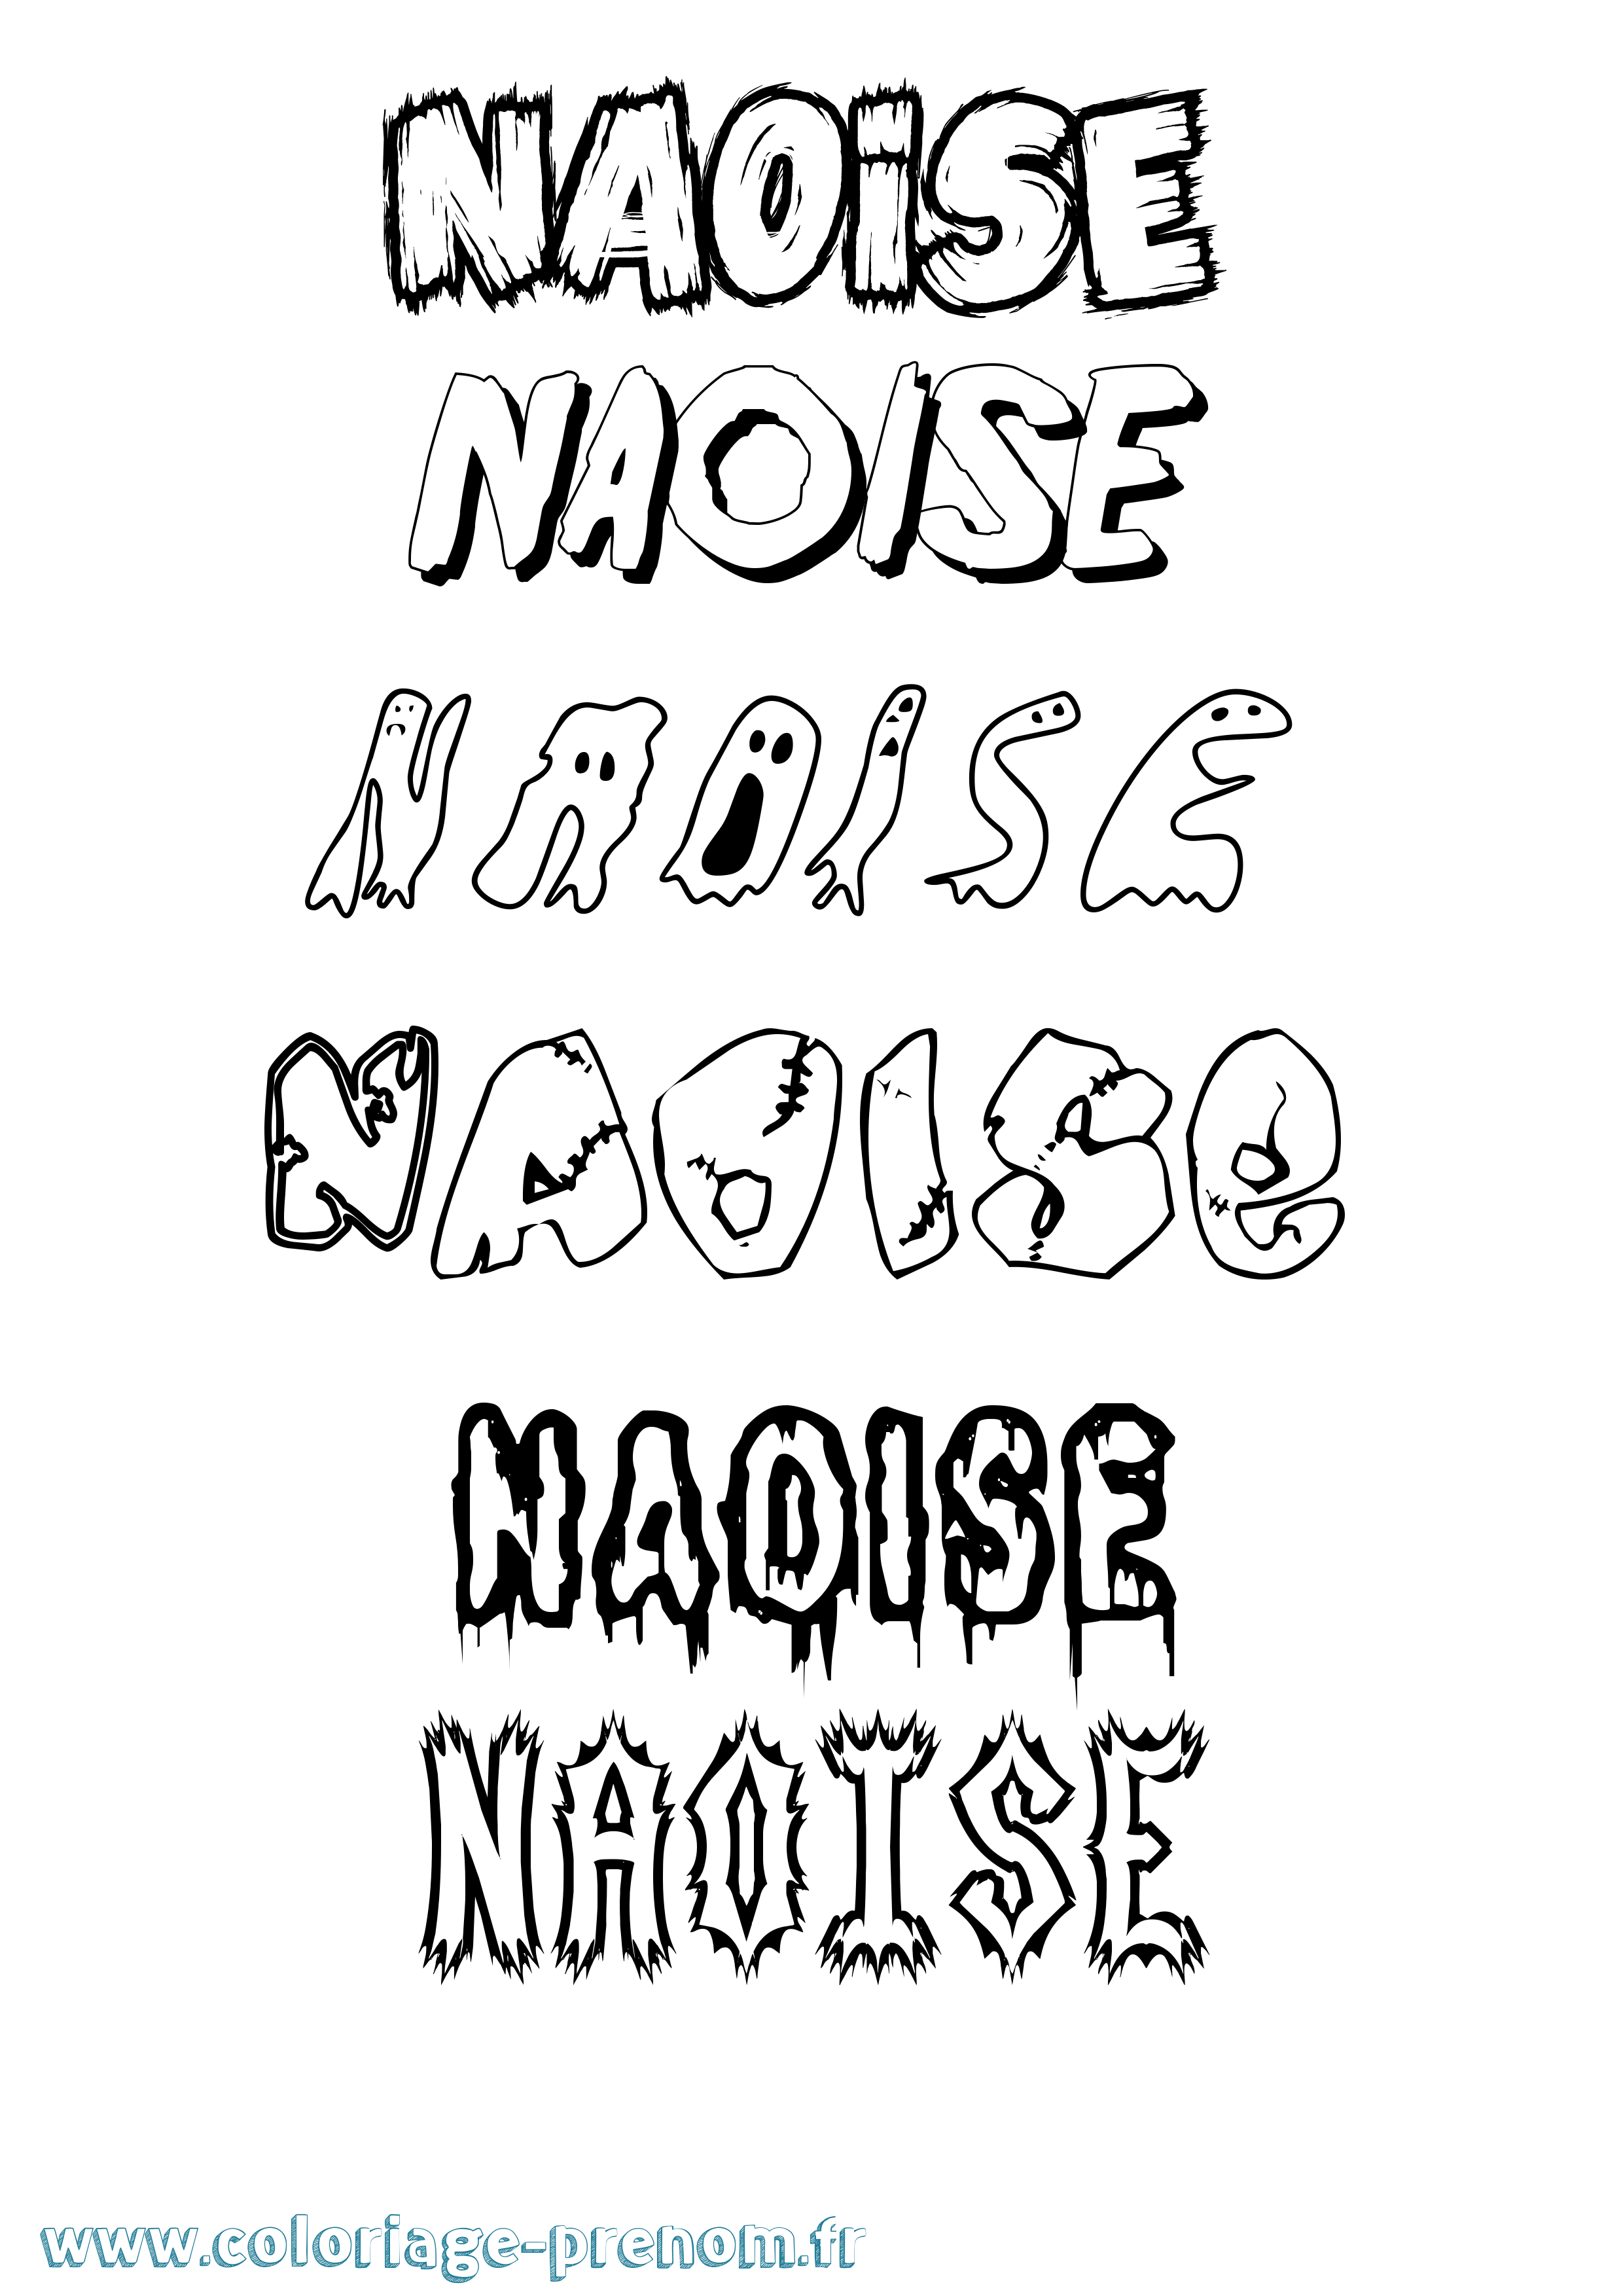 Coloriage prénom Naoise Frisson